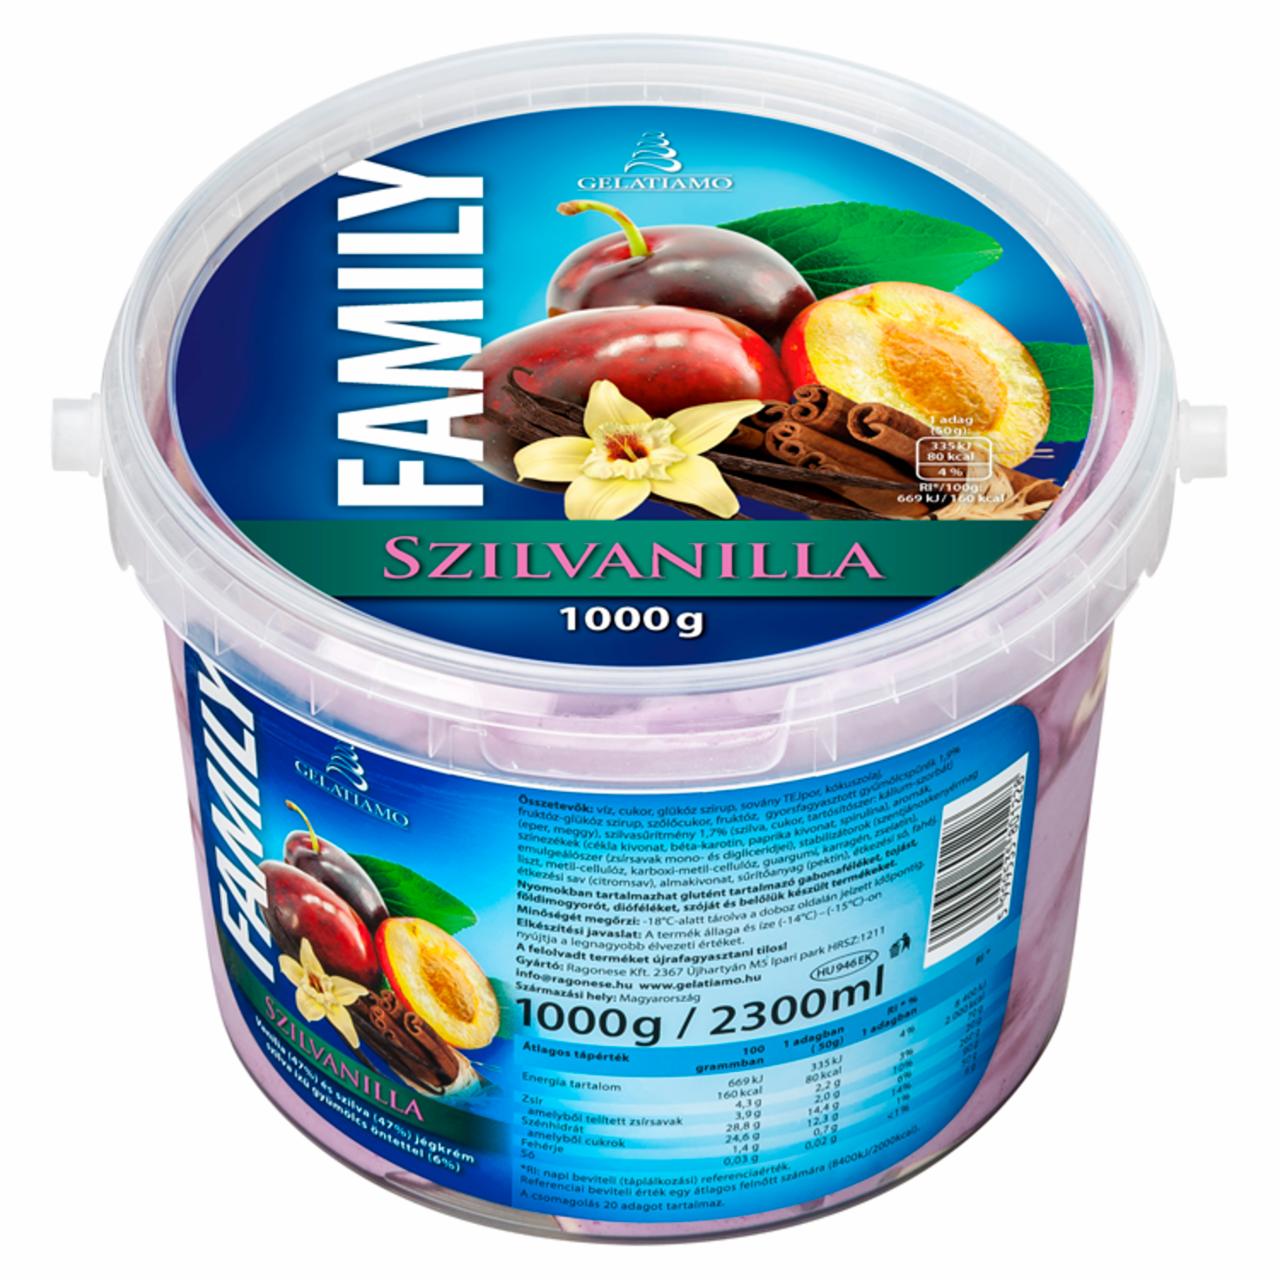 Képek - Gelatiamo Family Szilvanilla vanília és szilva jégkrém szilva ízű gyümölcs öntettel 2300 ml